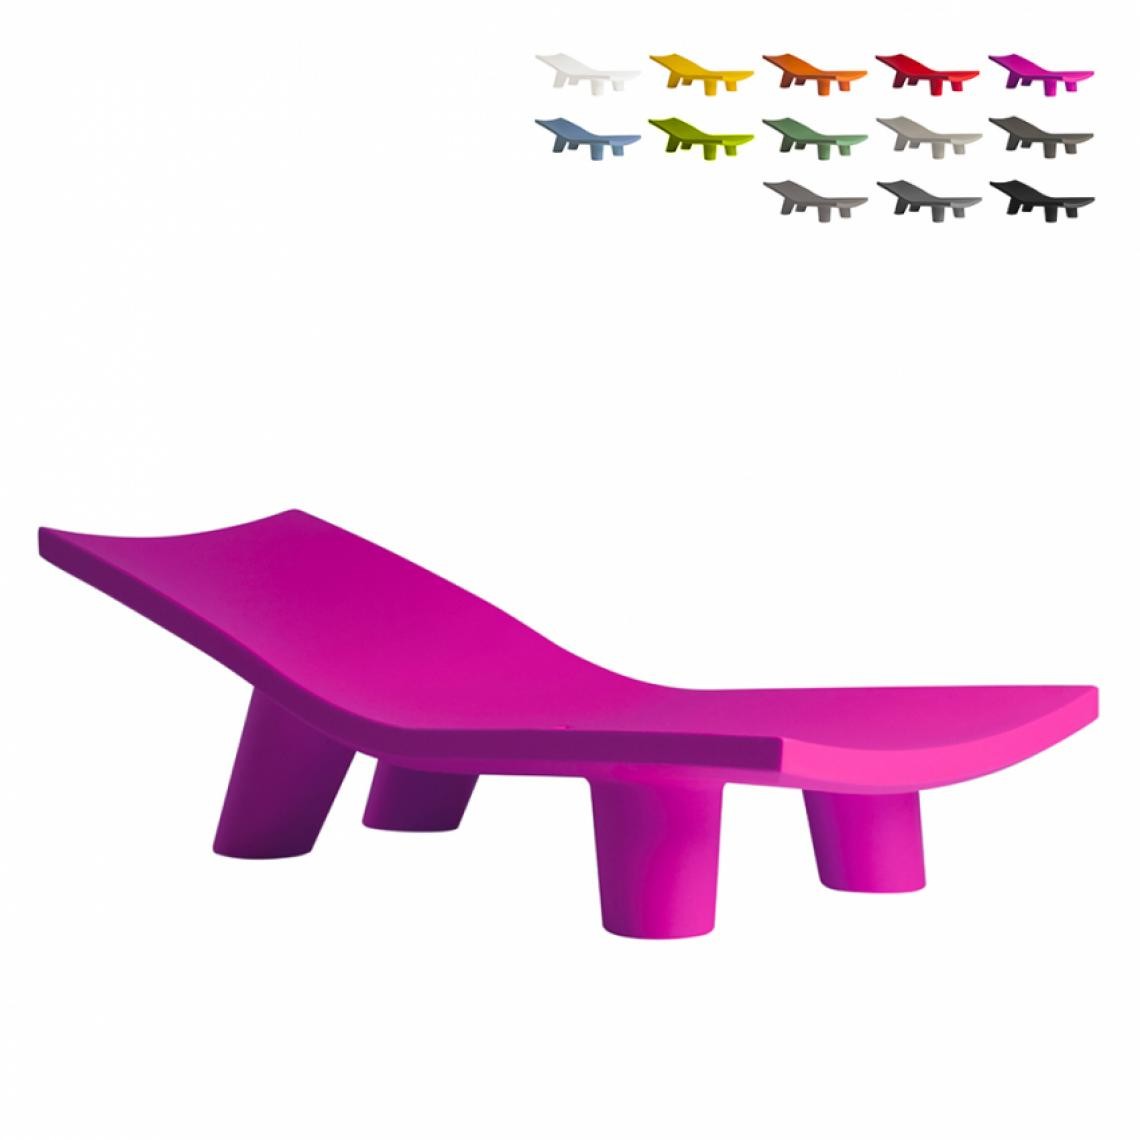 Slide - Transat Design Moderne En Polyéthylène Jardin Piscine Slide Low Lita Lounge, Couleur: Fucsia - Transats, chaises longues